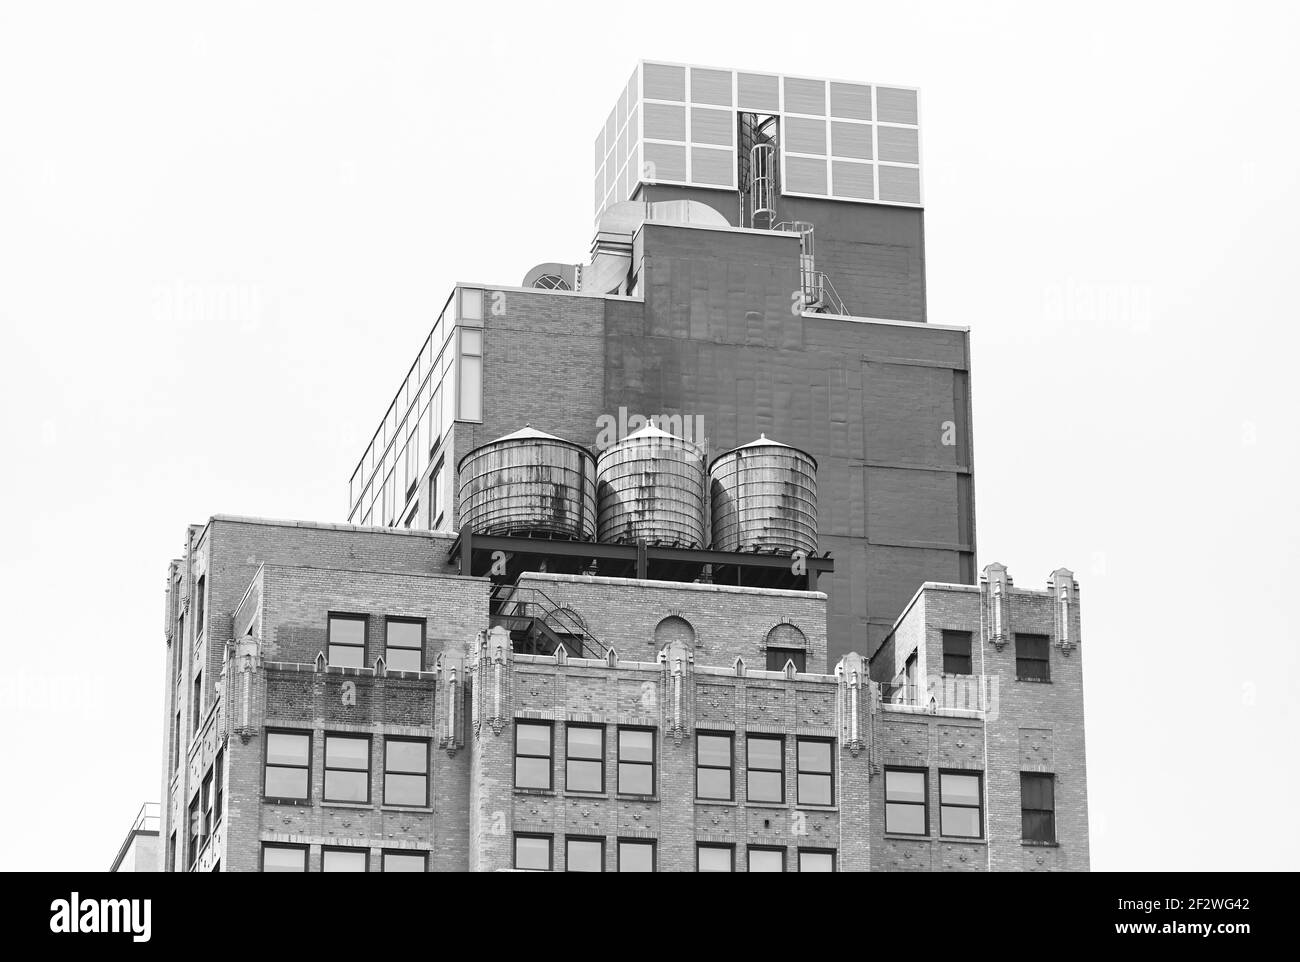 Immagine in bianco e nero di torri d'acqua su un tetto di un vecchio edificio a Manhattan, New York City, USA. Foto Stock